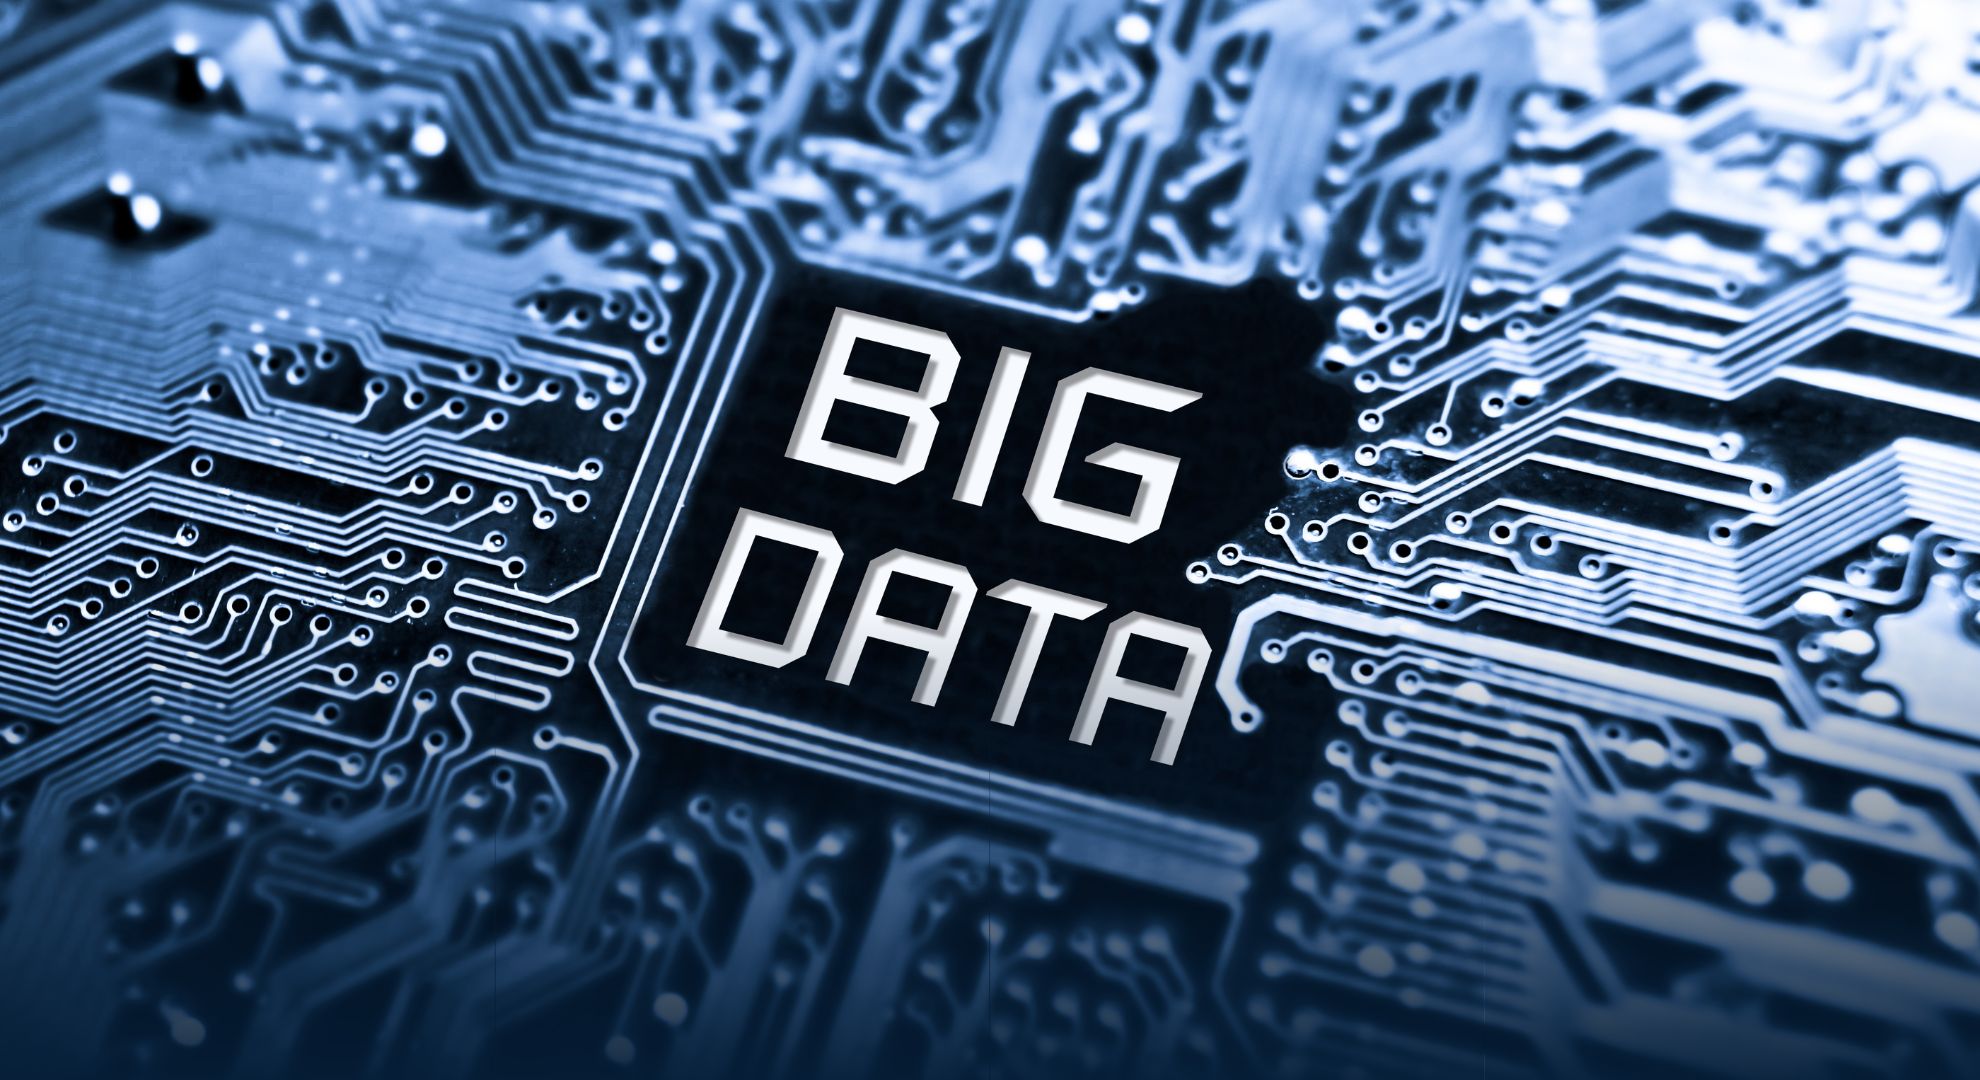 Terapkan Big Data untuk Meningkatkan Bisnis dengan Bootcamp Data Science